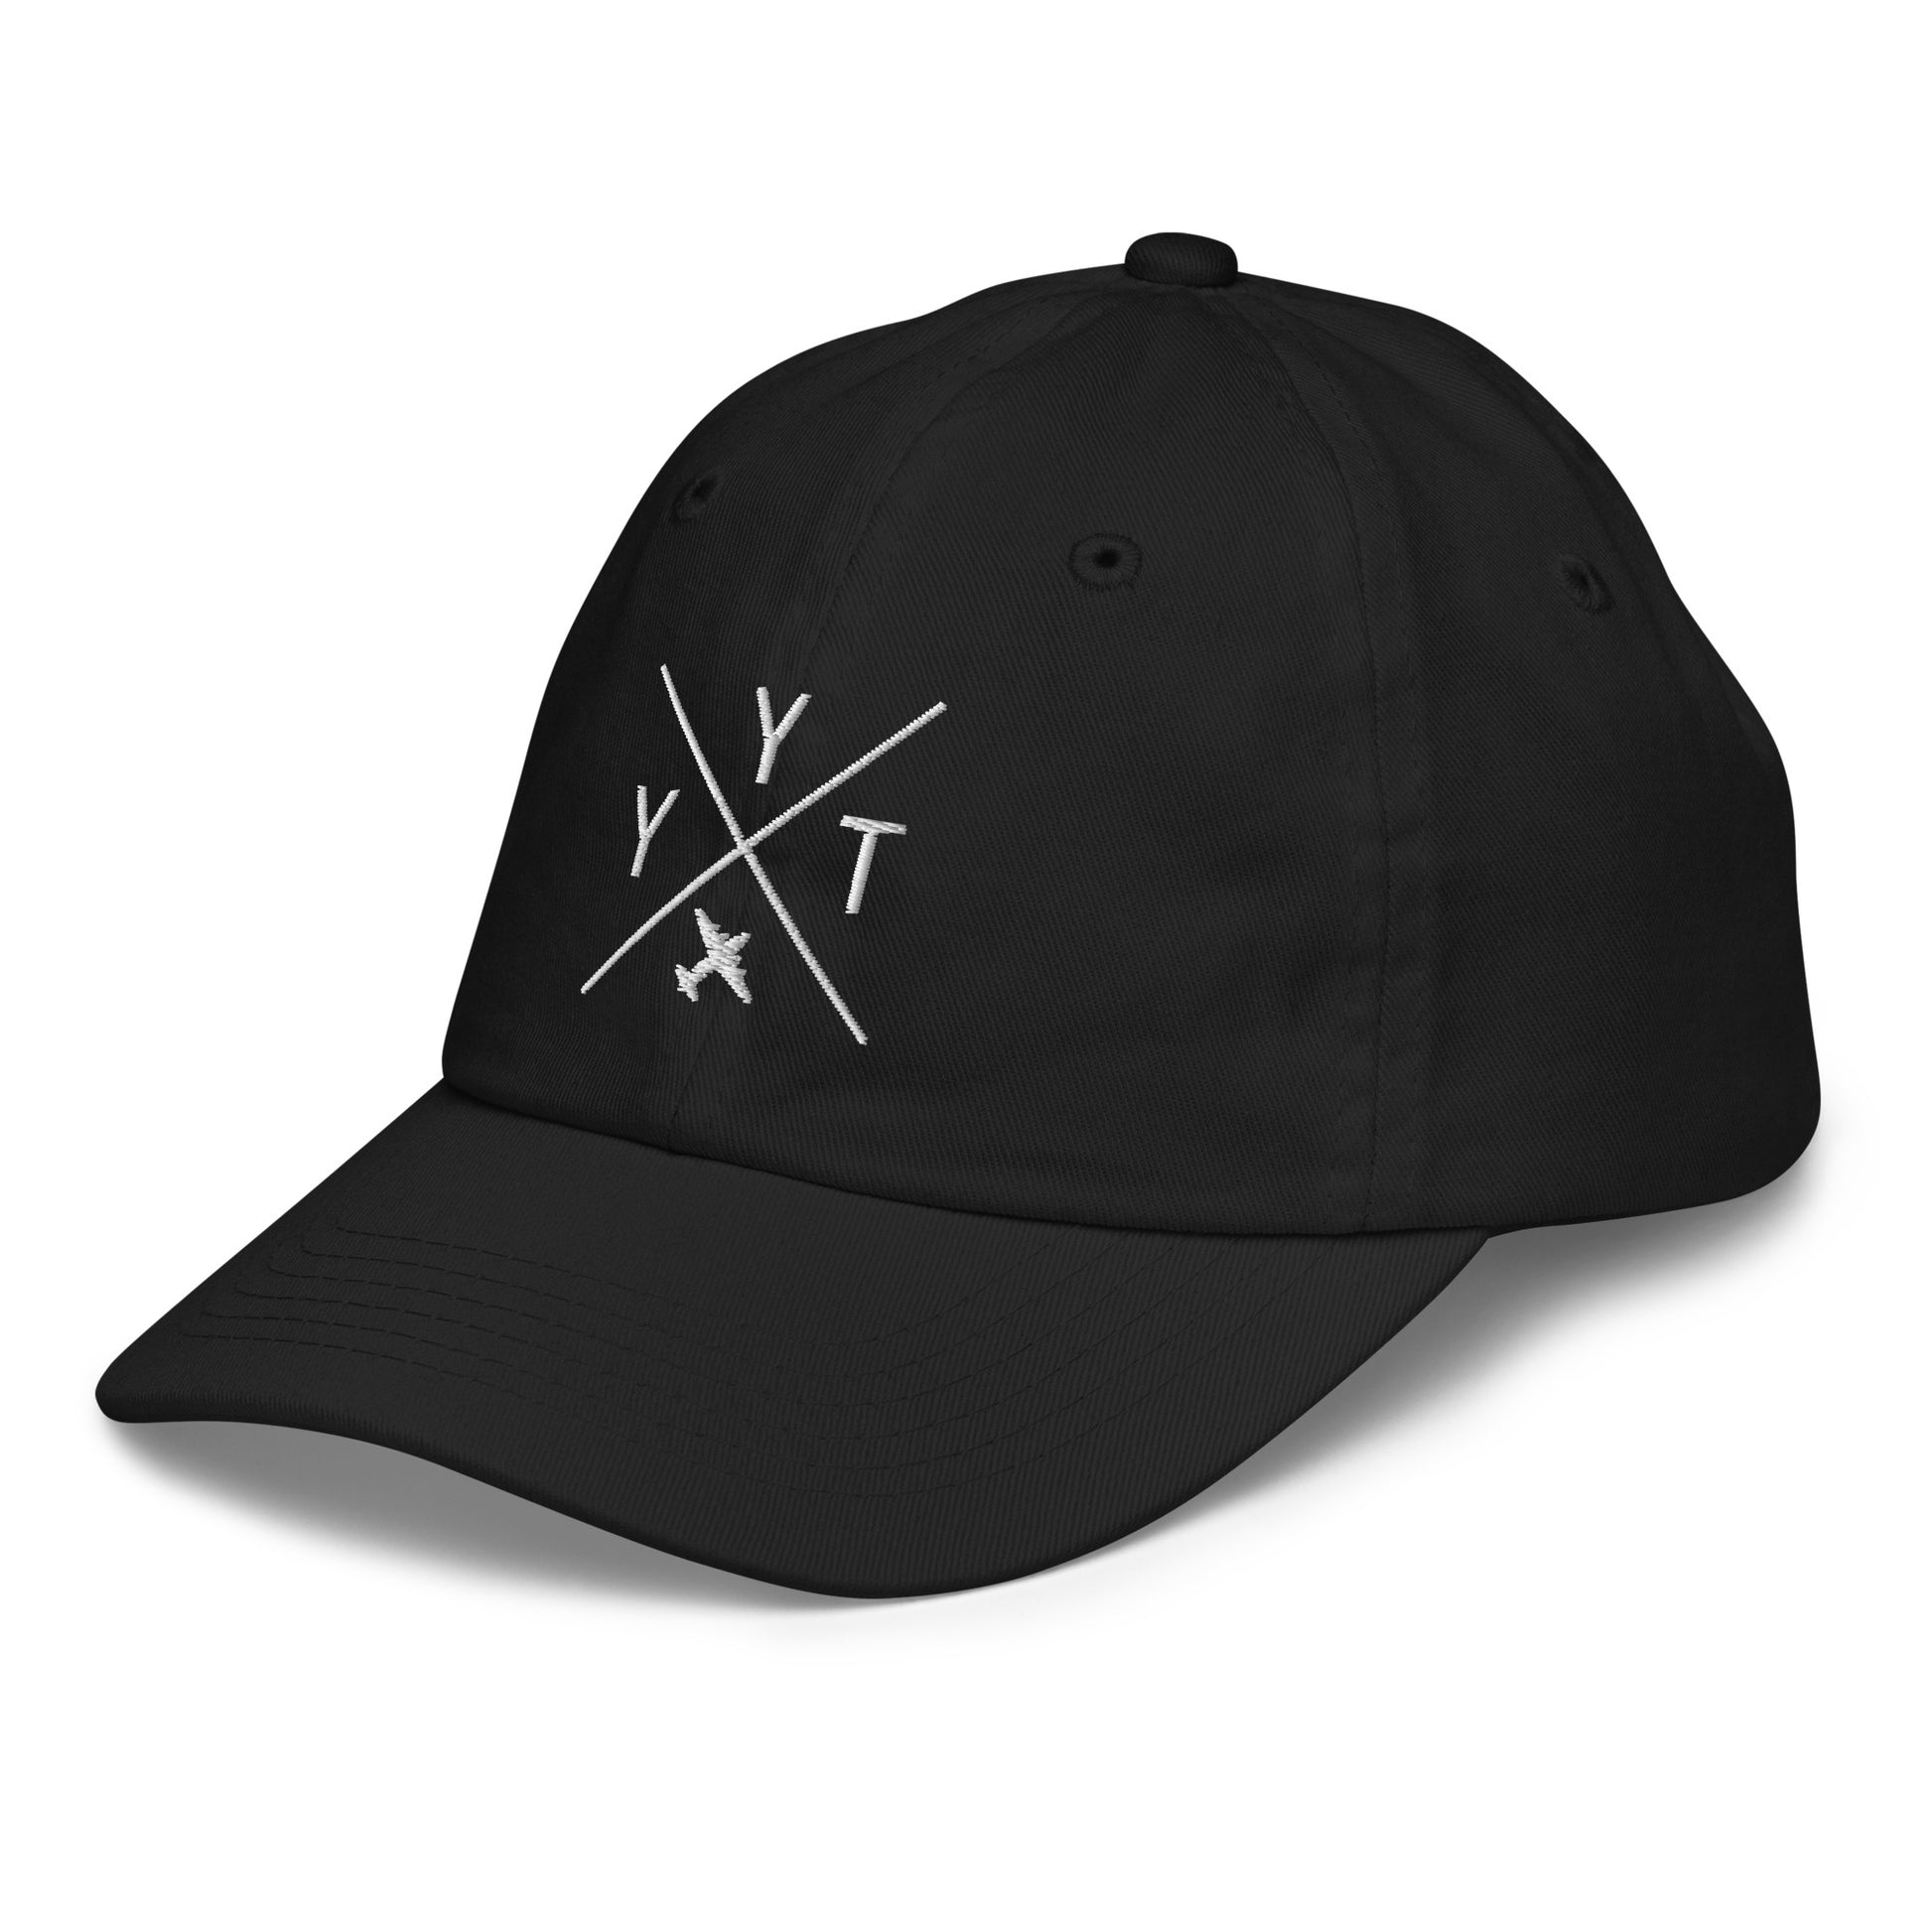 Crossed-X Kid's Baseball Cap - White • YYT St. John's • YHM Designs - Image 13